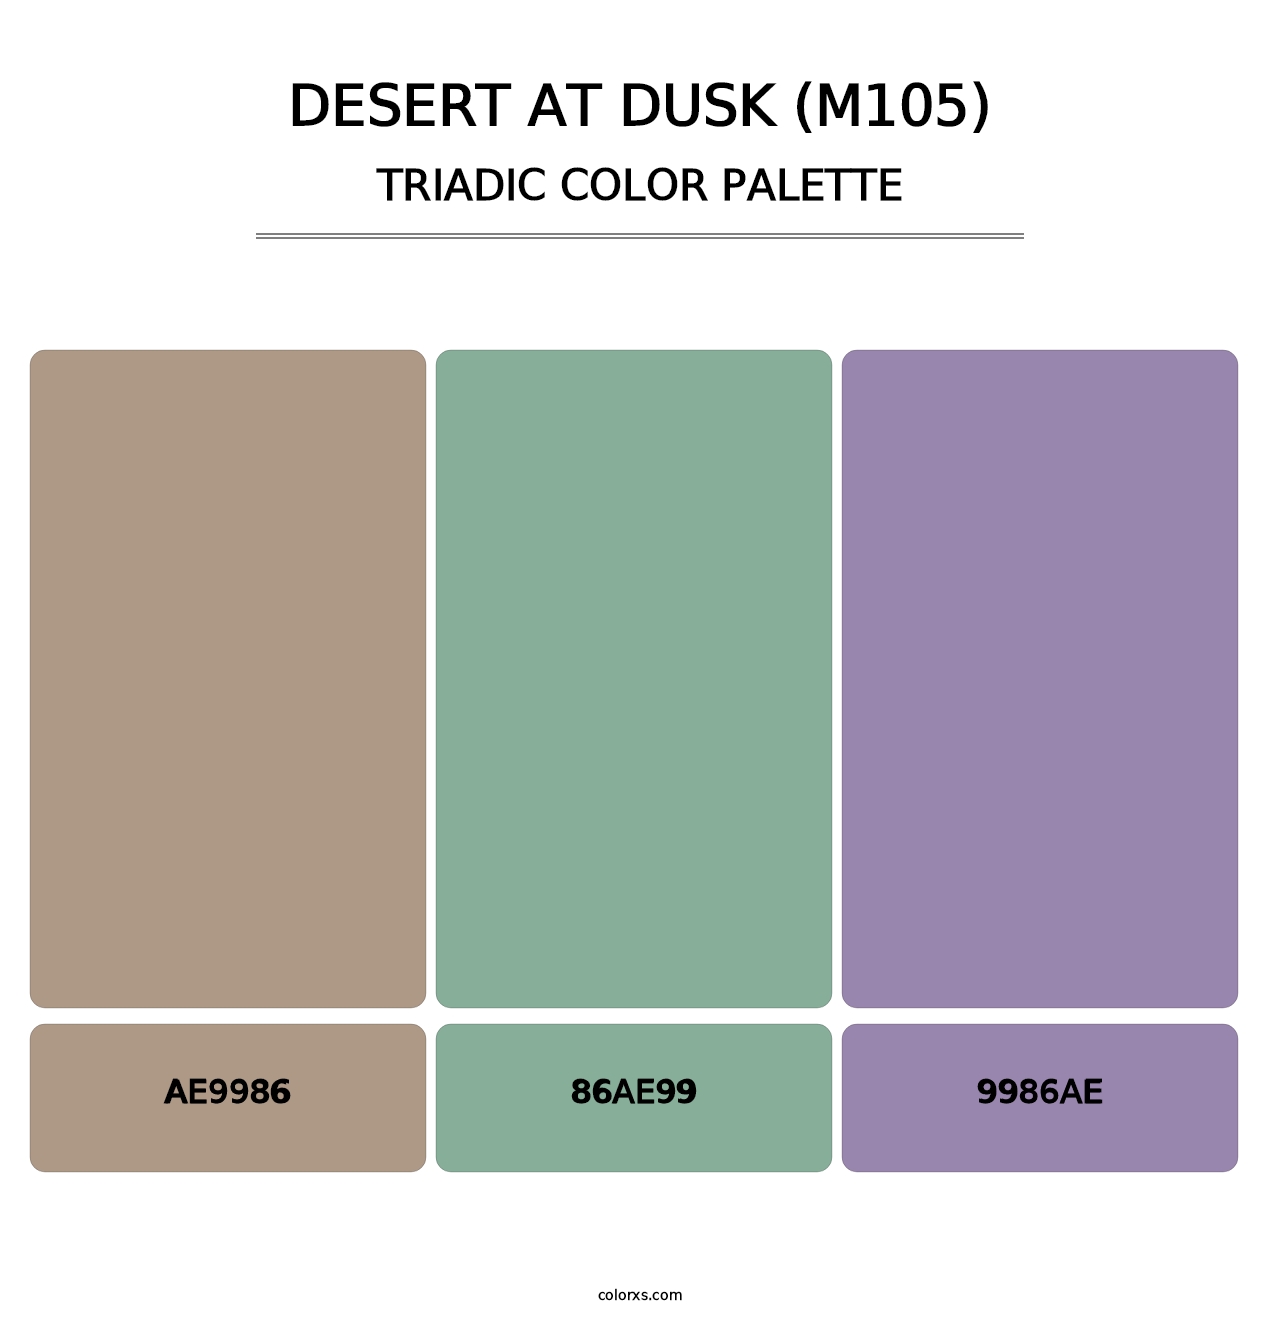 Desert at Dusk (M105) - Triadic Color Palette